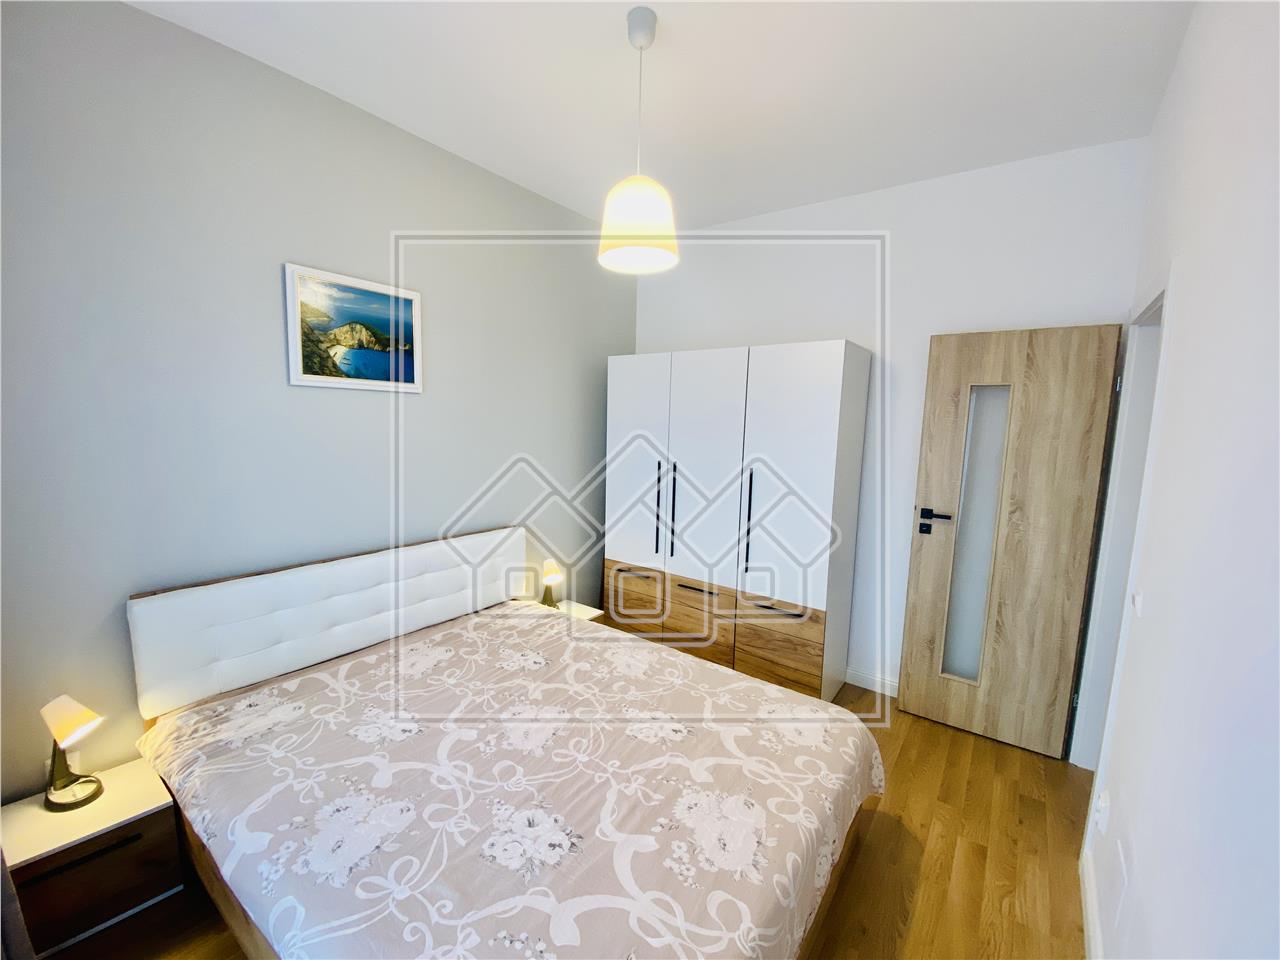 Apartament de inchiriat in Sibiu -2 camere si balcon -Calea Surii Mici